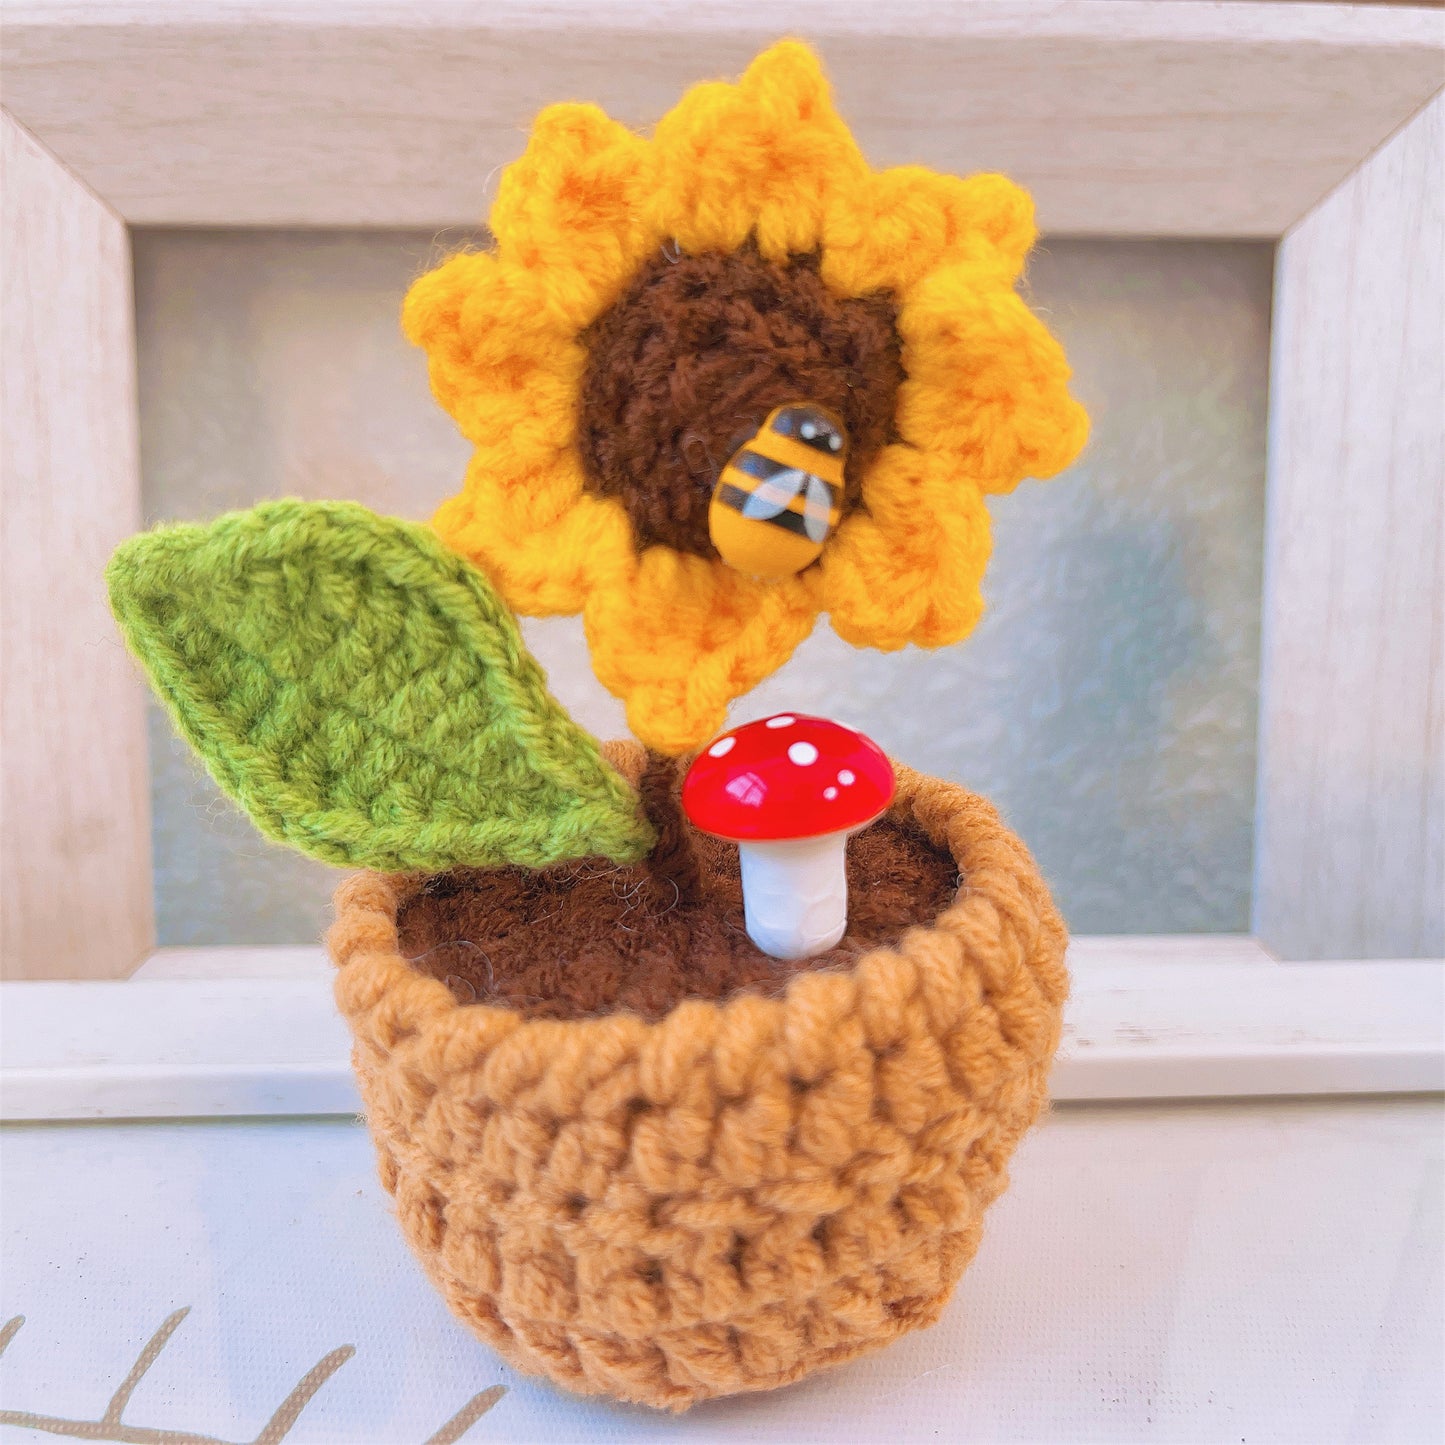 Blossom Delight Crochet Pot et Proud Pineapple Bundle Set (Texte personnalisé / personnalisé disponible)